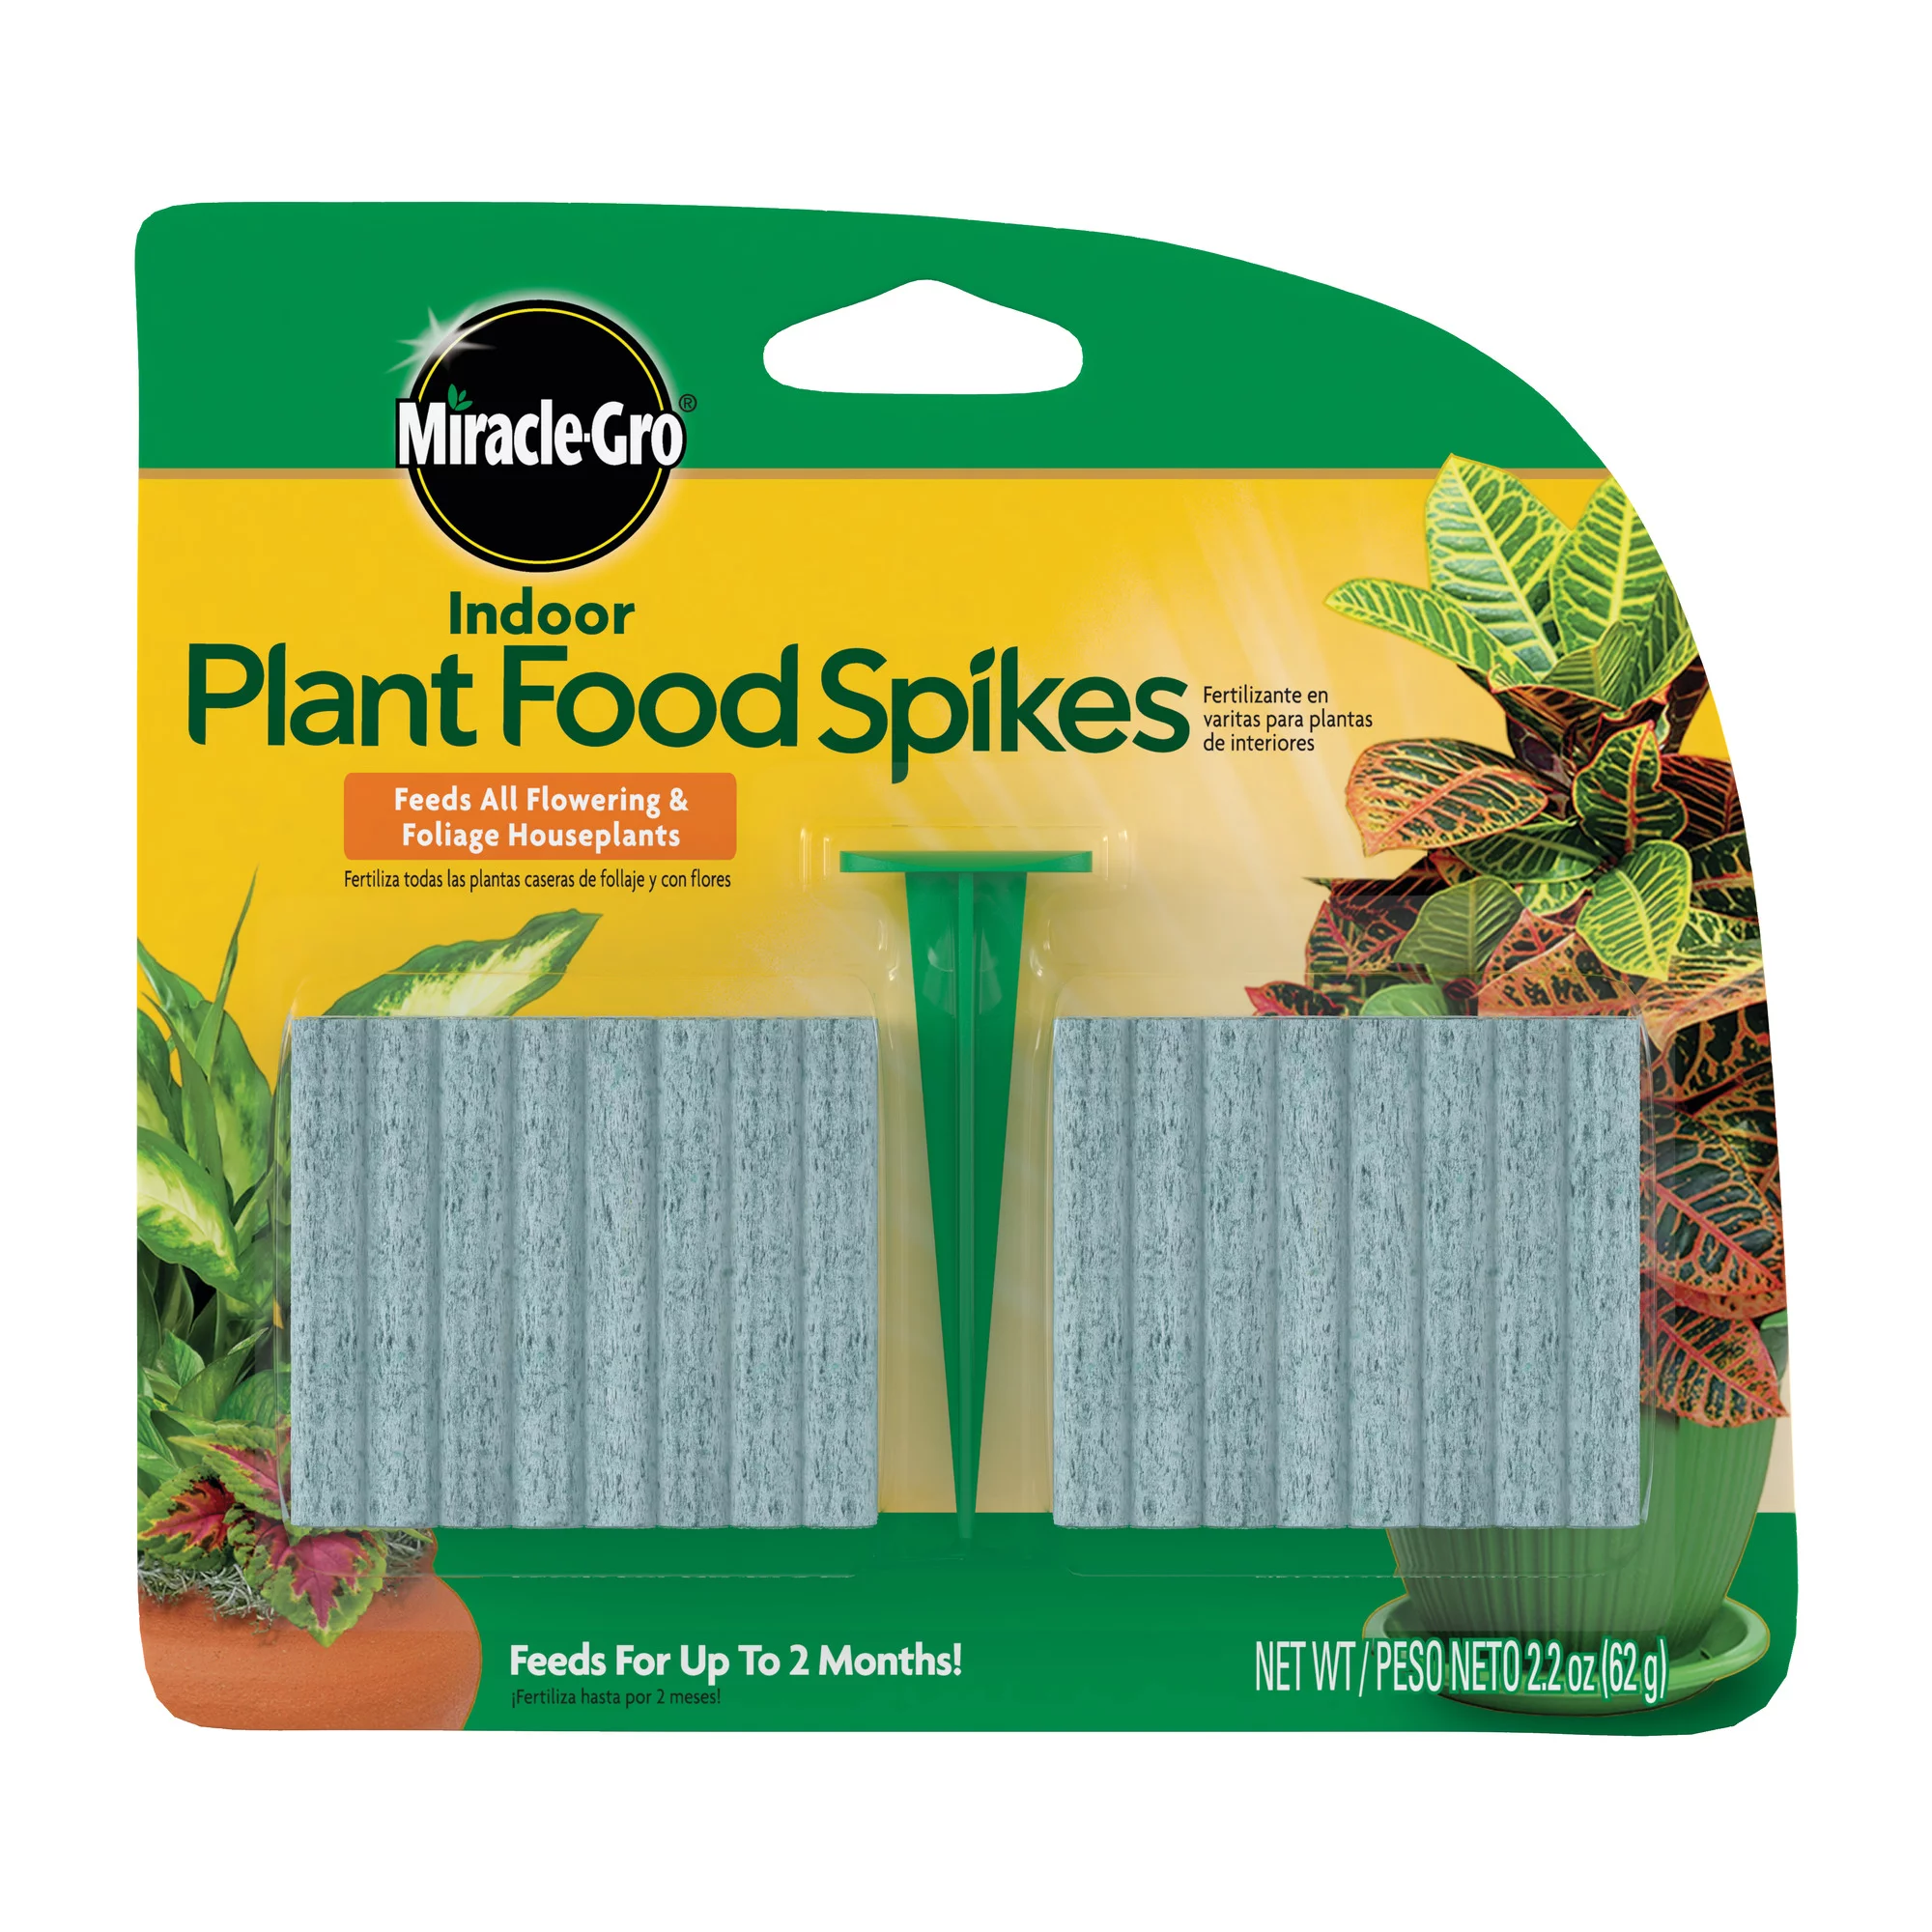 Plant food spikes